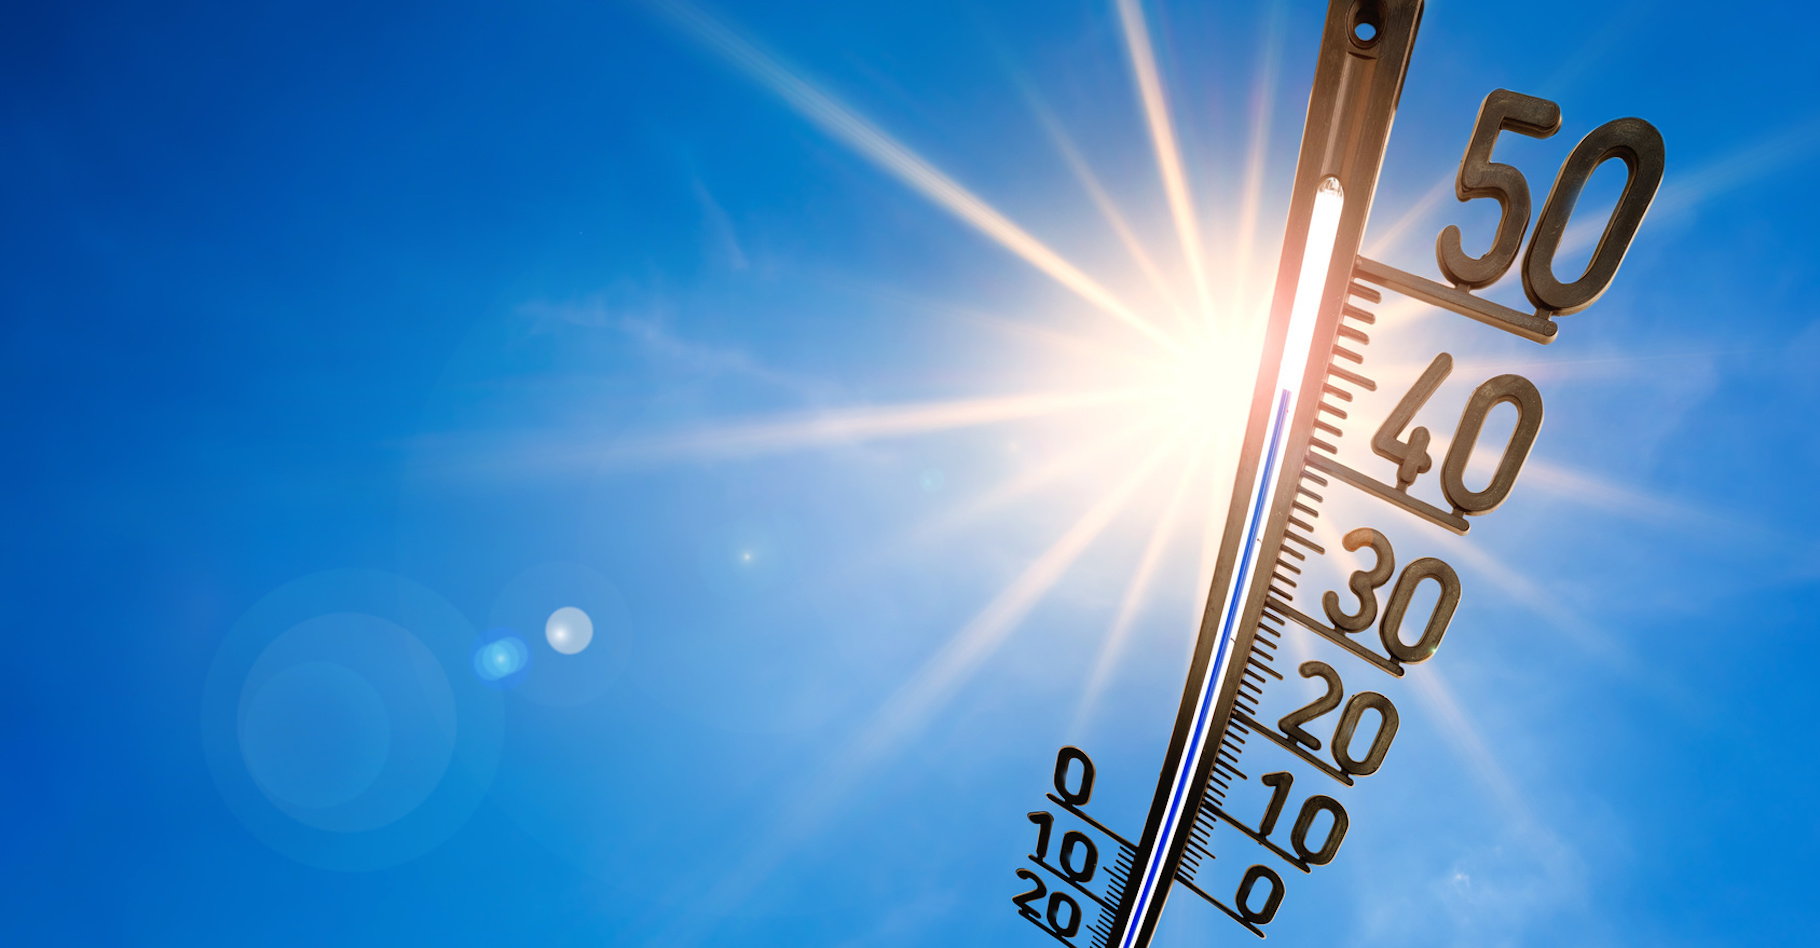 Le service européen de surveillance du changement climatique Copernicus révèle que le mois de juin 2020 a été le plus chaud jamais enregistré. Le deuxième mois de juin le plus chaud, en réalité, juste après le mois de juin 2019. © John Smith, Fotolia